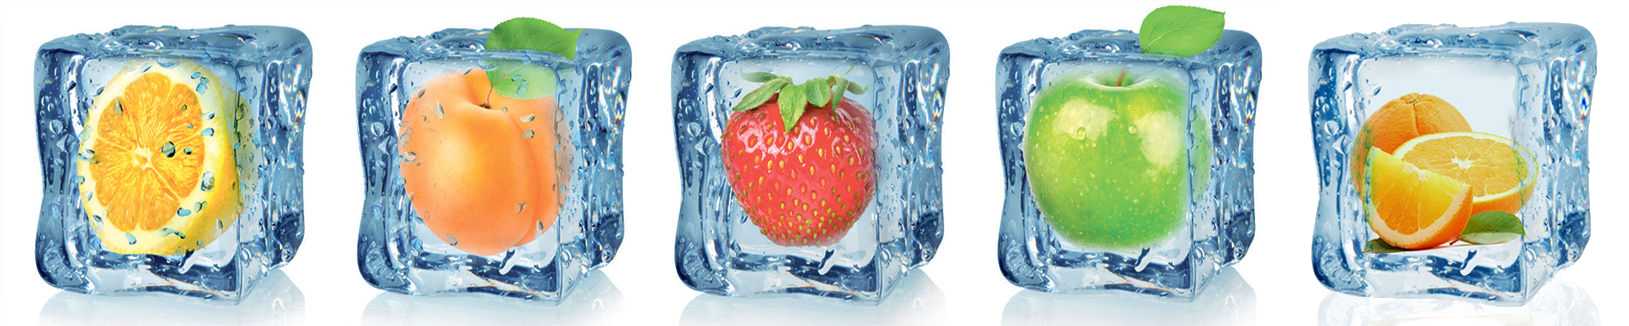 Сколько можно хранить замороженные ягоды в морозильной камере